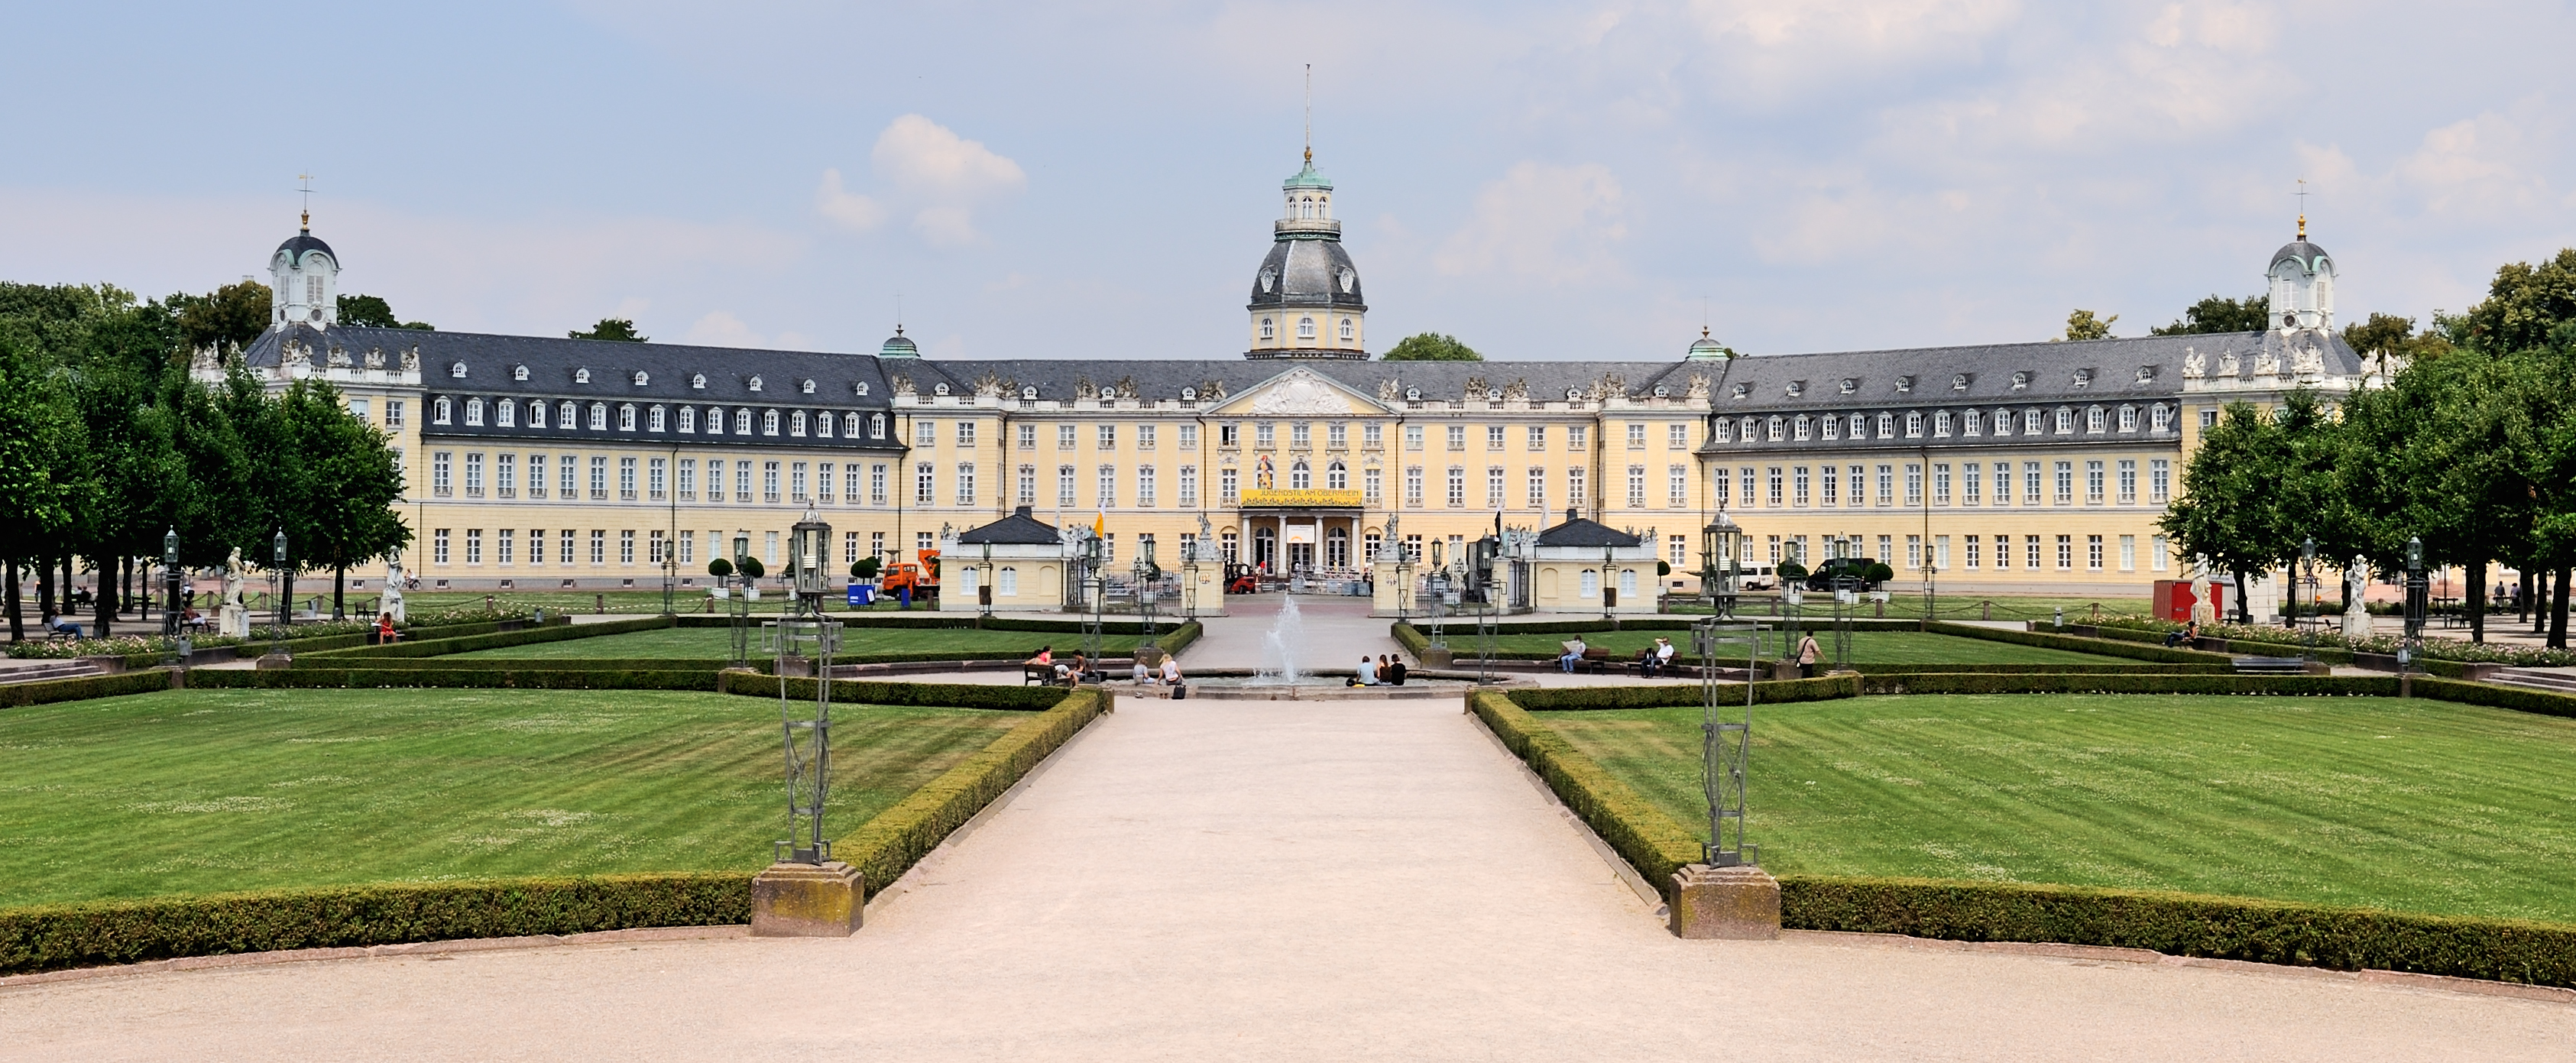 File:Karlsruhe Castle July 09 c66.jpg - Wikimedia Commons